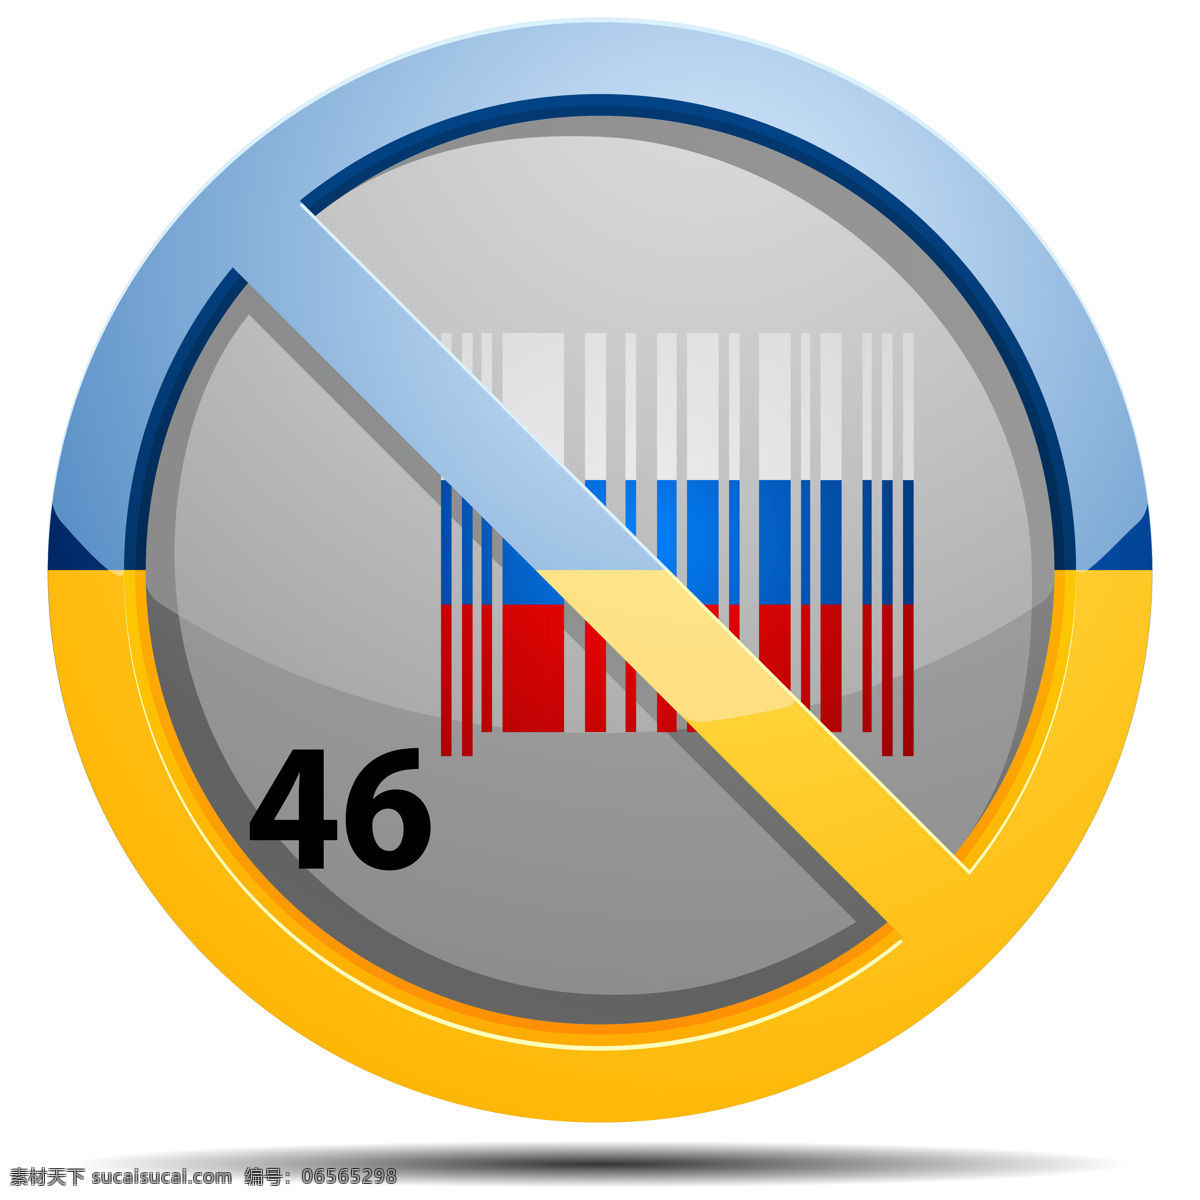 停止 战争 符号 乌克兰 俄罗斯 主题 战争题材 俄罗斯旗帜 禁止符号 军事武器 现代科技